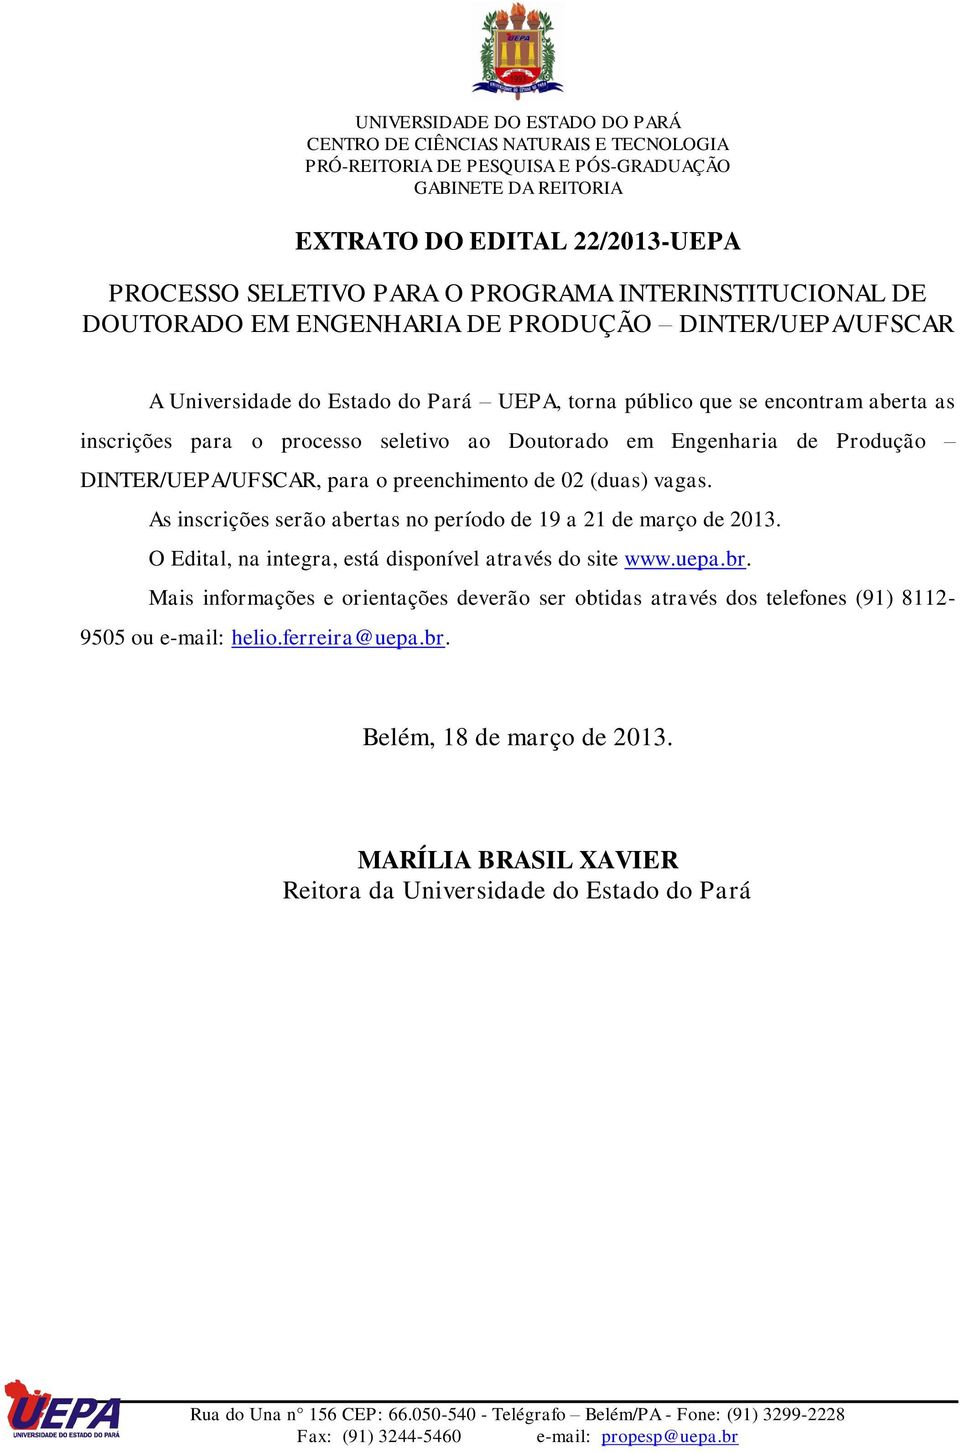 vagas. As inscrições serão abertas no período de 19 a 21 de março de 2013. O Edital, na integra, está disponível através do site www.uepa.br.